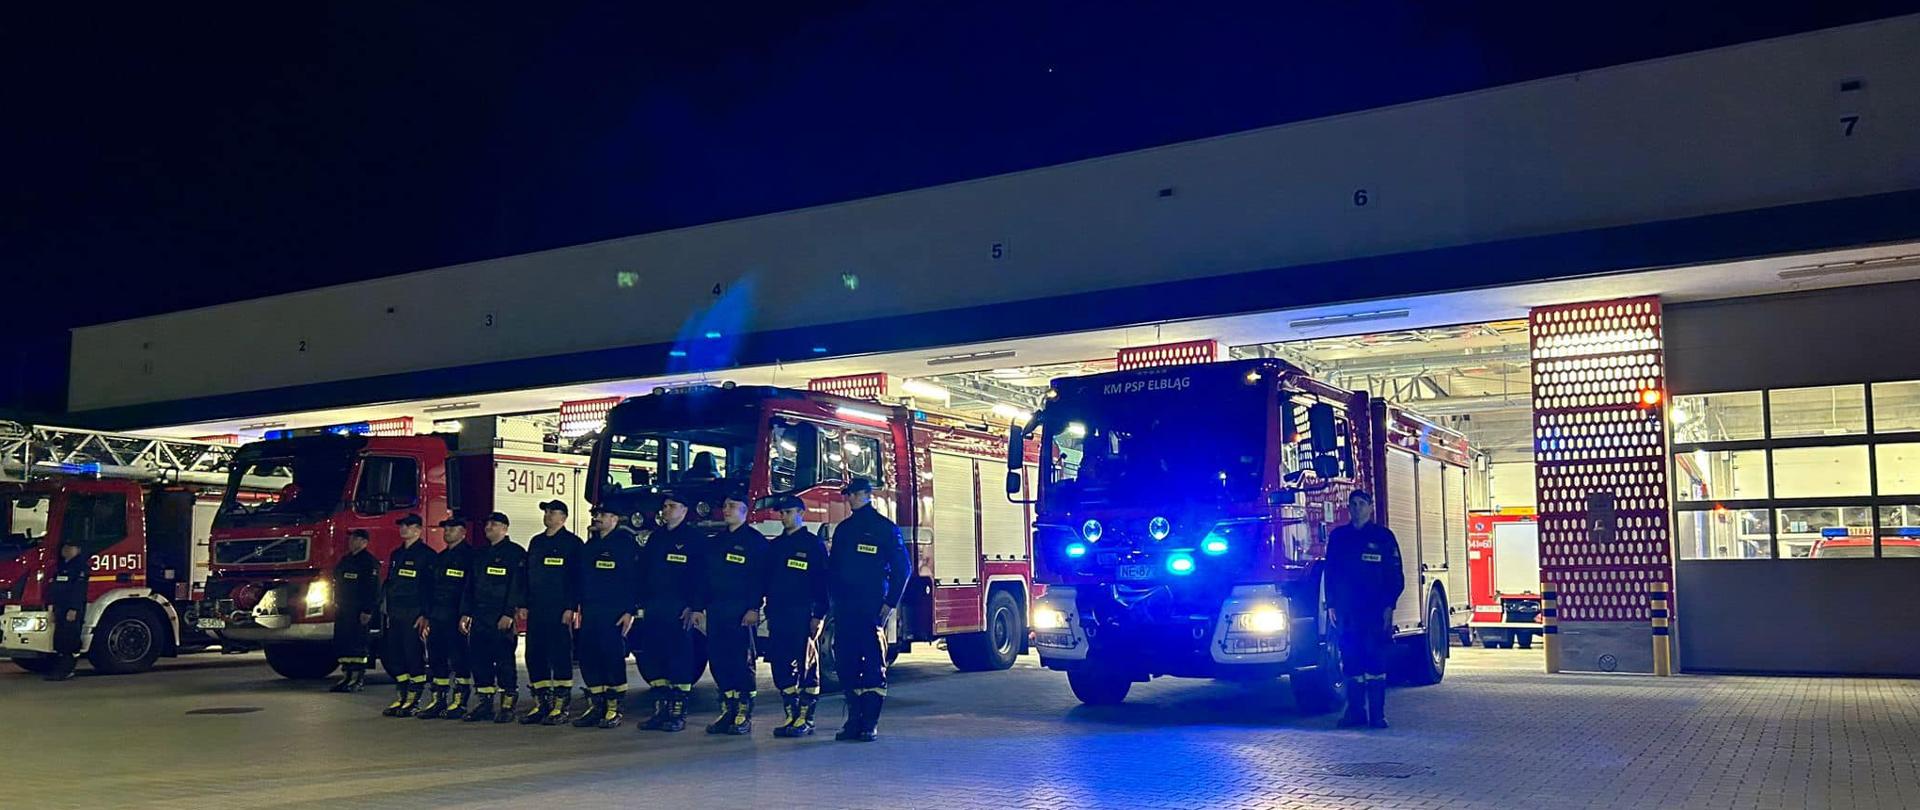 Strażacy stoją w szeregu i oddają hołd swojemu koledze. Za nimi stoją pojazdy pożarnicze z włączonymi światłami alarmowymi. W tle widoczny budynek remizy strażackiej.